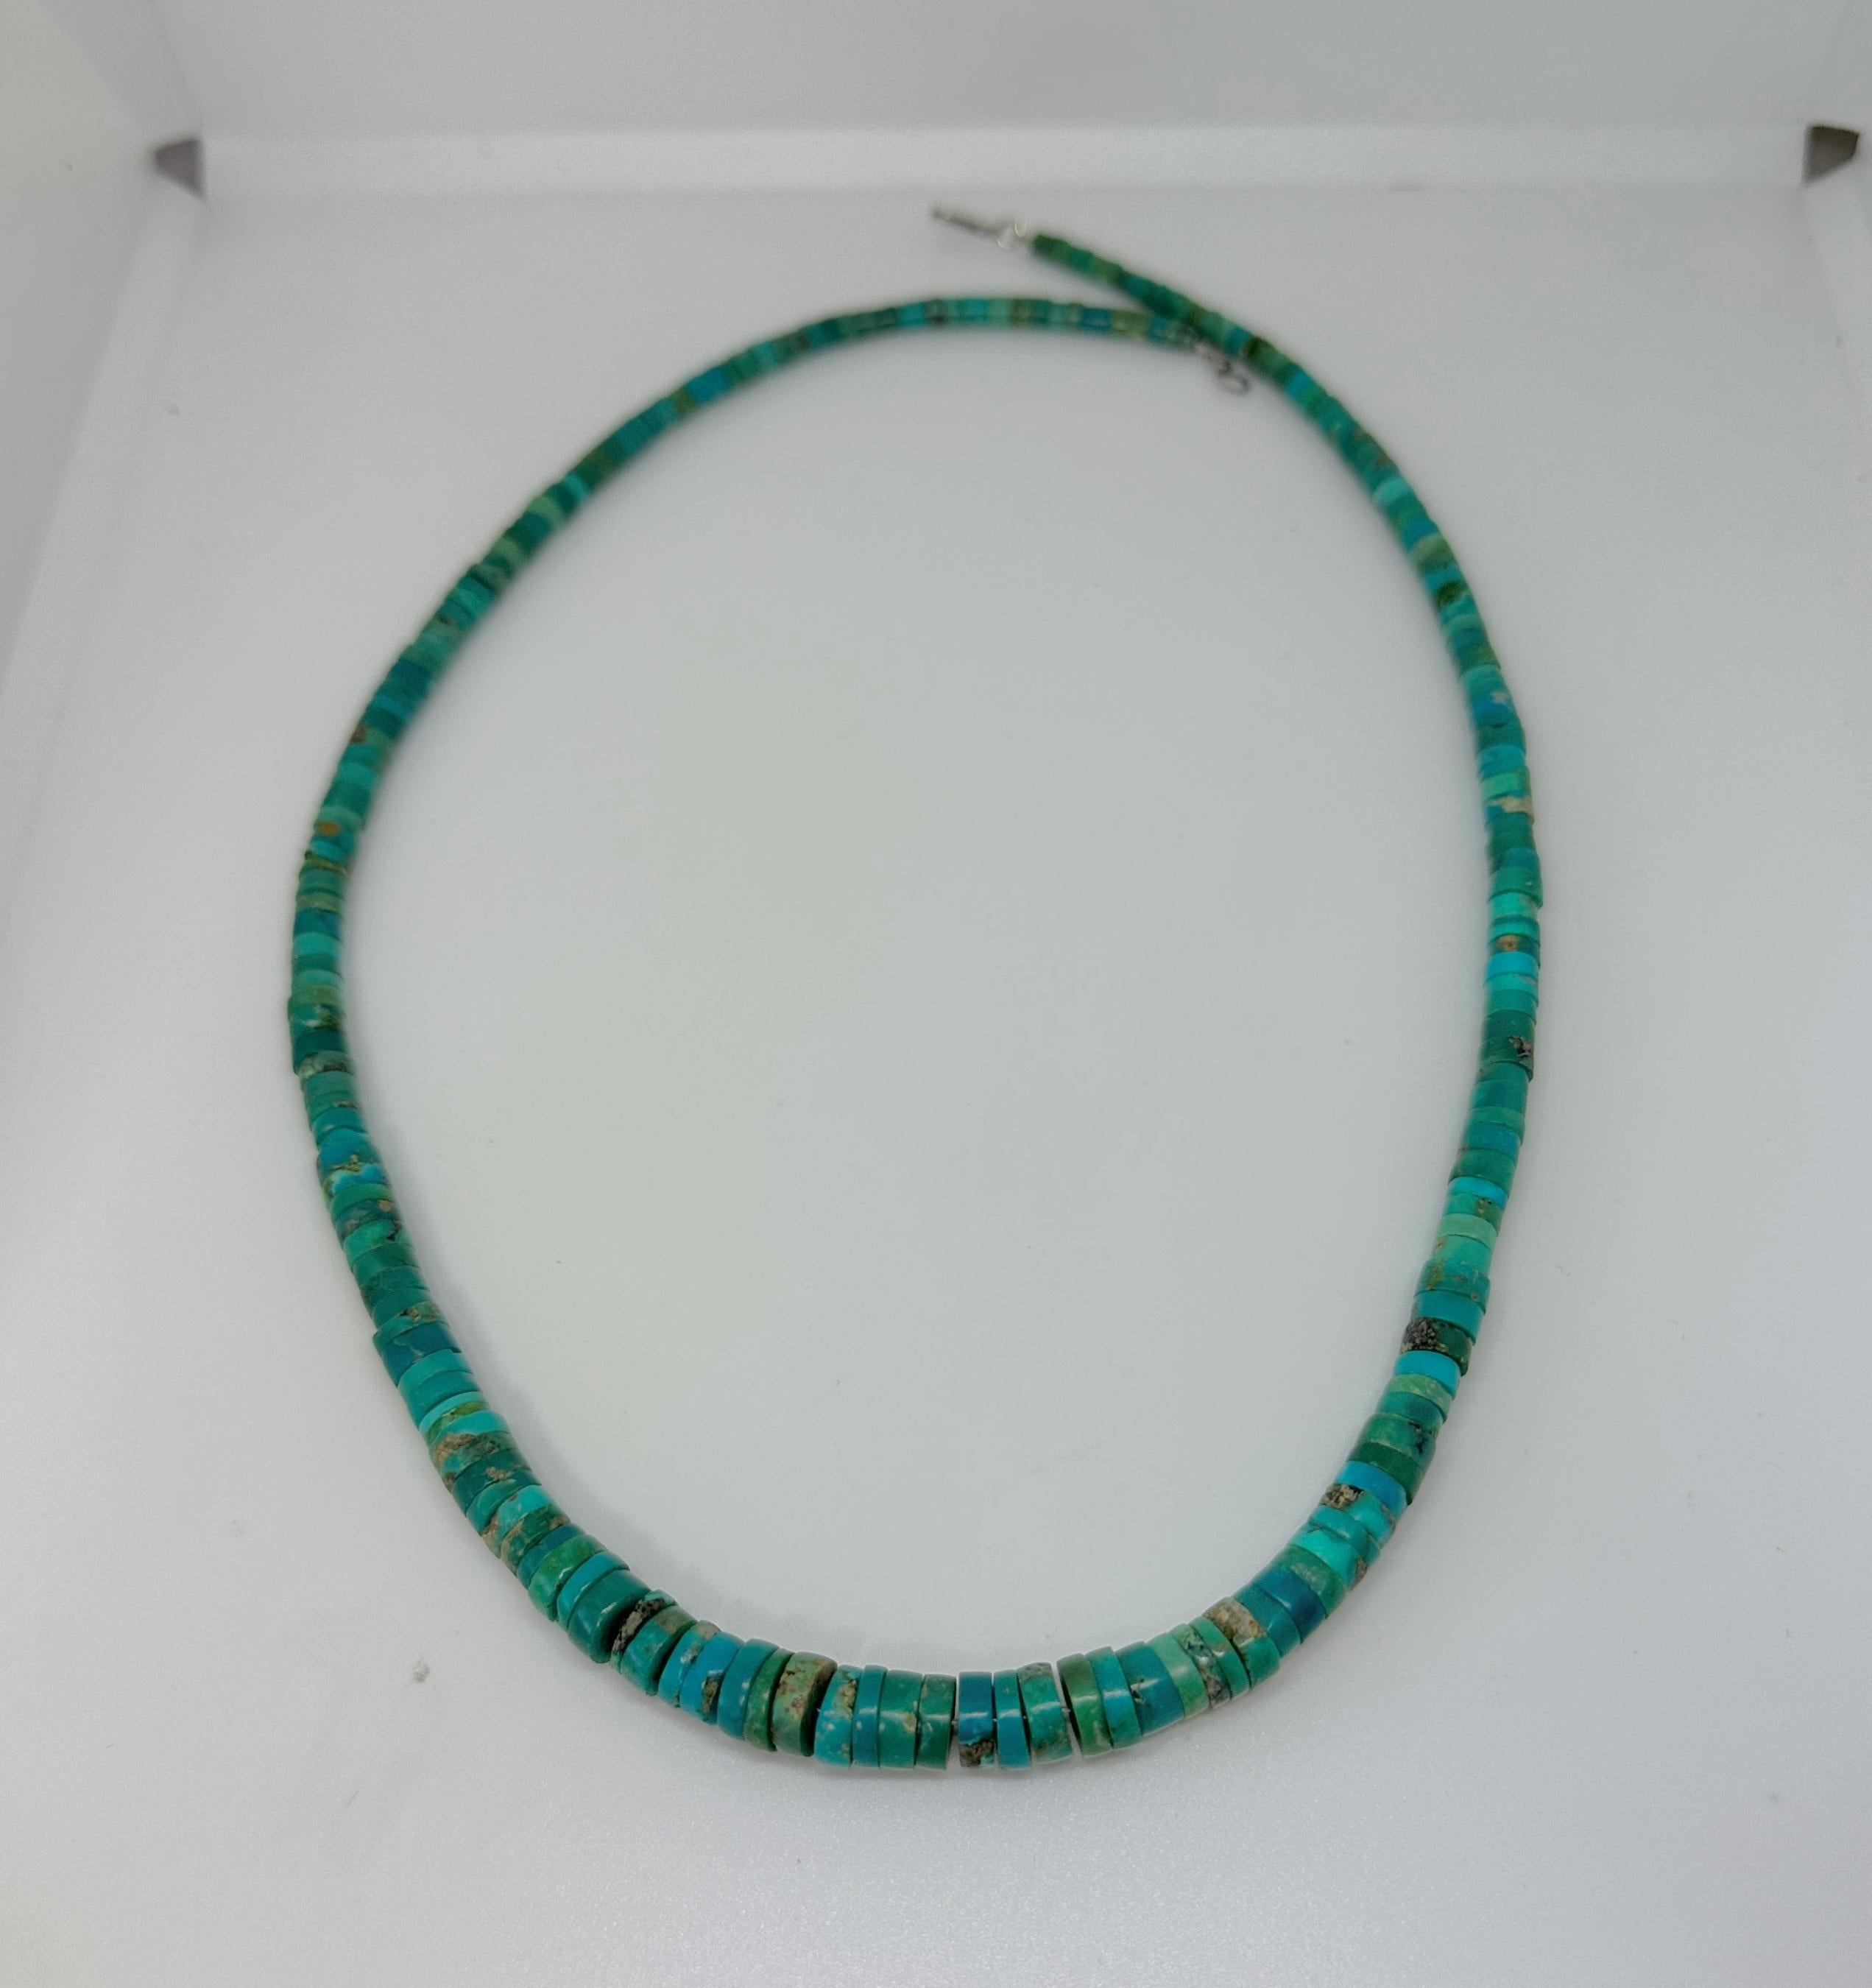 Dies ist eine atemberaubende Native American 1920er Jahre Karibik Blau und Grün Türkis Heishi Bead Halskette von 21 Zoll in der Länge. 
Die wunderschönen, handgeschliffenen Türkis-Heishi-Perlen sind im Durchmesser von 4 bis 8 mm abgestuft. Die